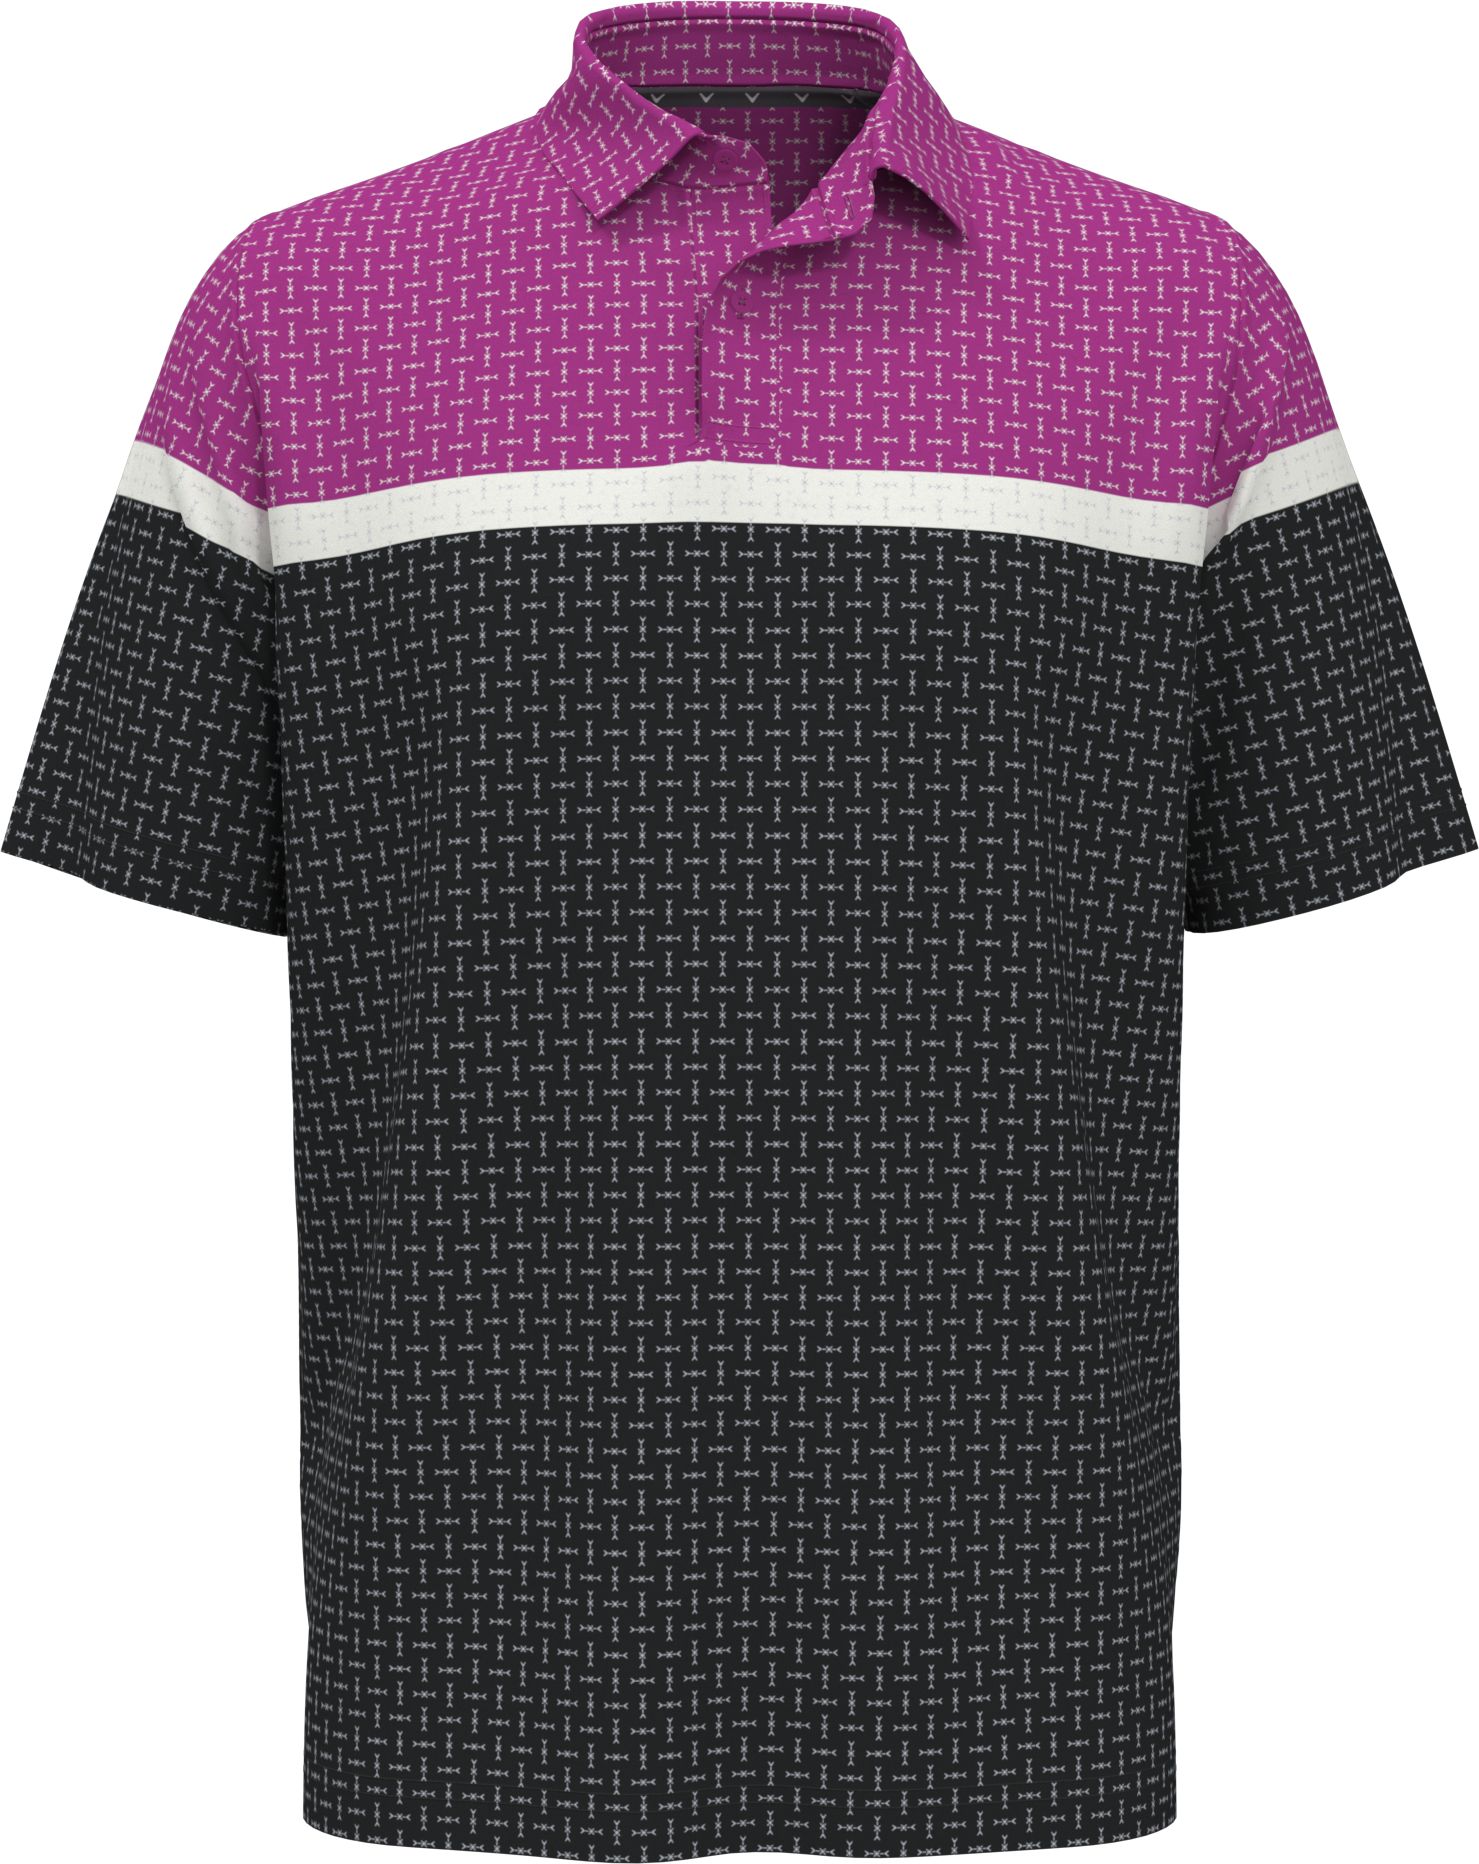 Callaway Classic Geo Print pánské golfové triko, fialové/tmavě šedé, vel. XL